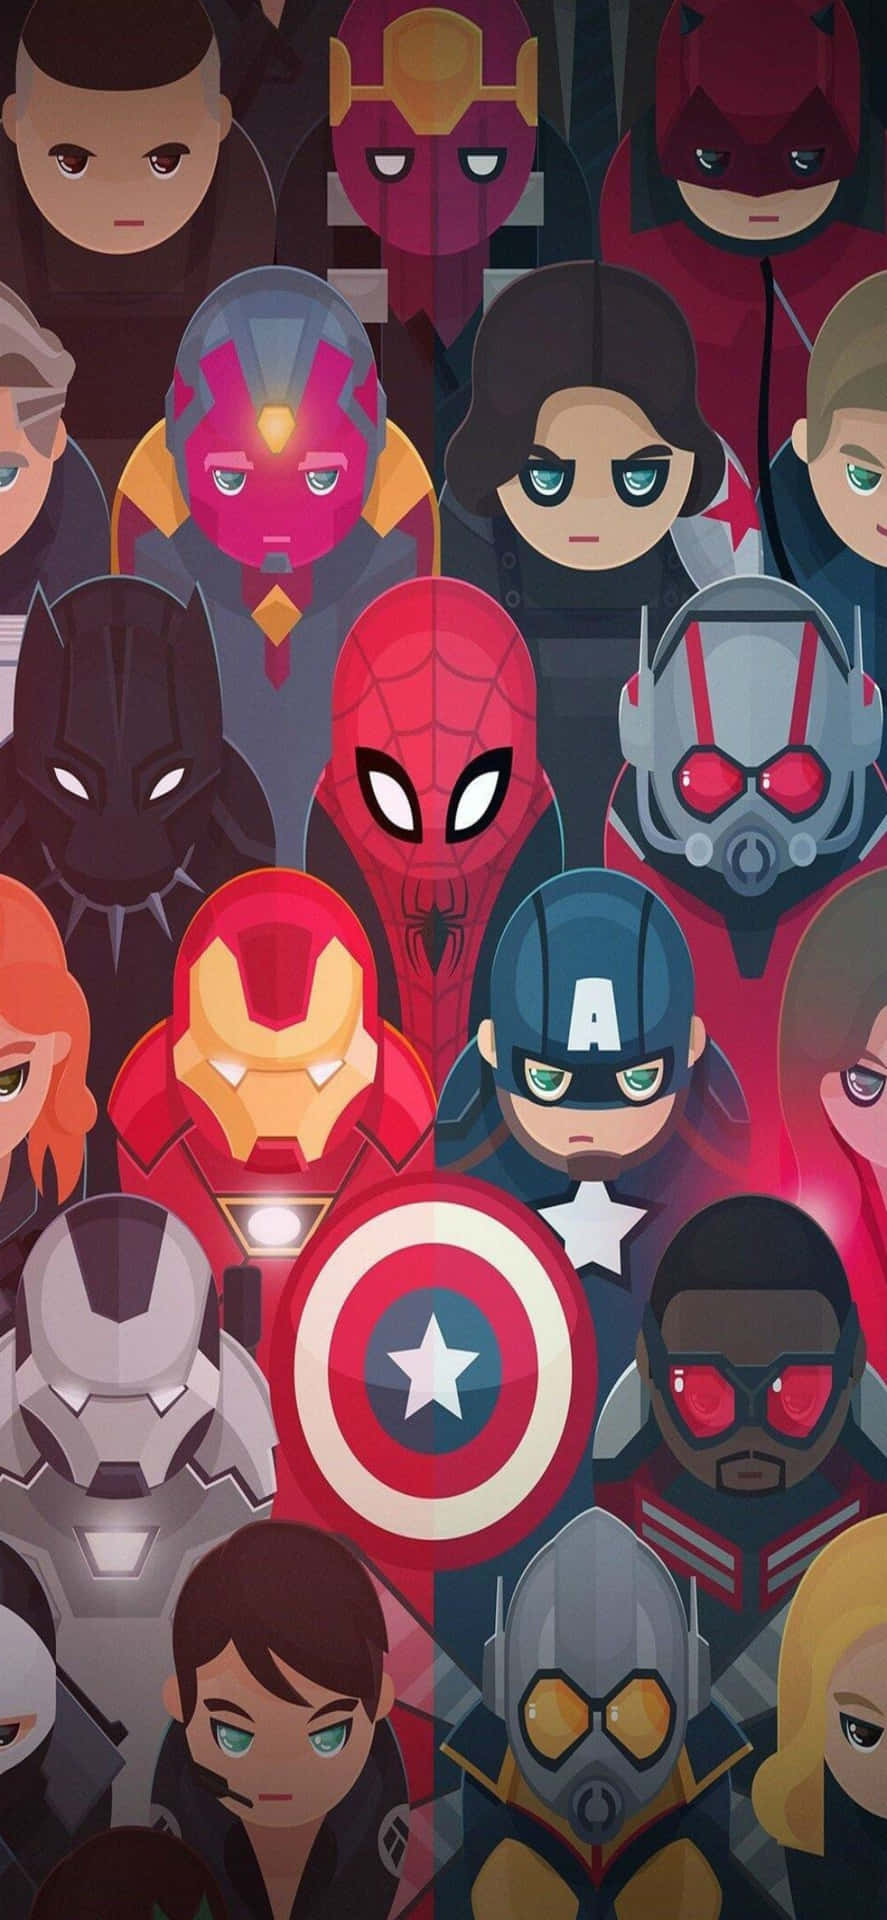 Rendiil Tuo Iphone Ancora Più Potente Con Il Team Che Ha Dato Inizio A Tutto - Gli Avengers Di Marvel